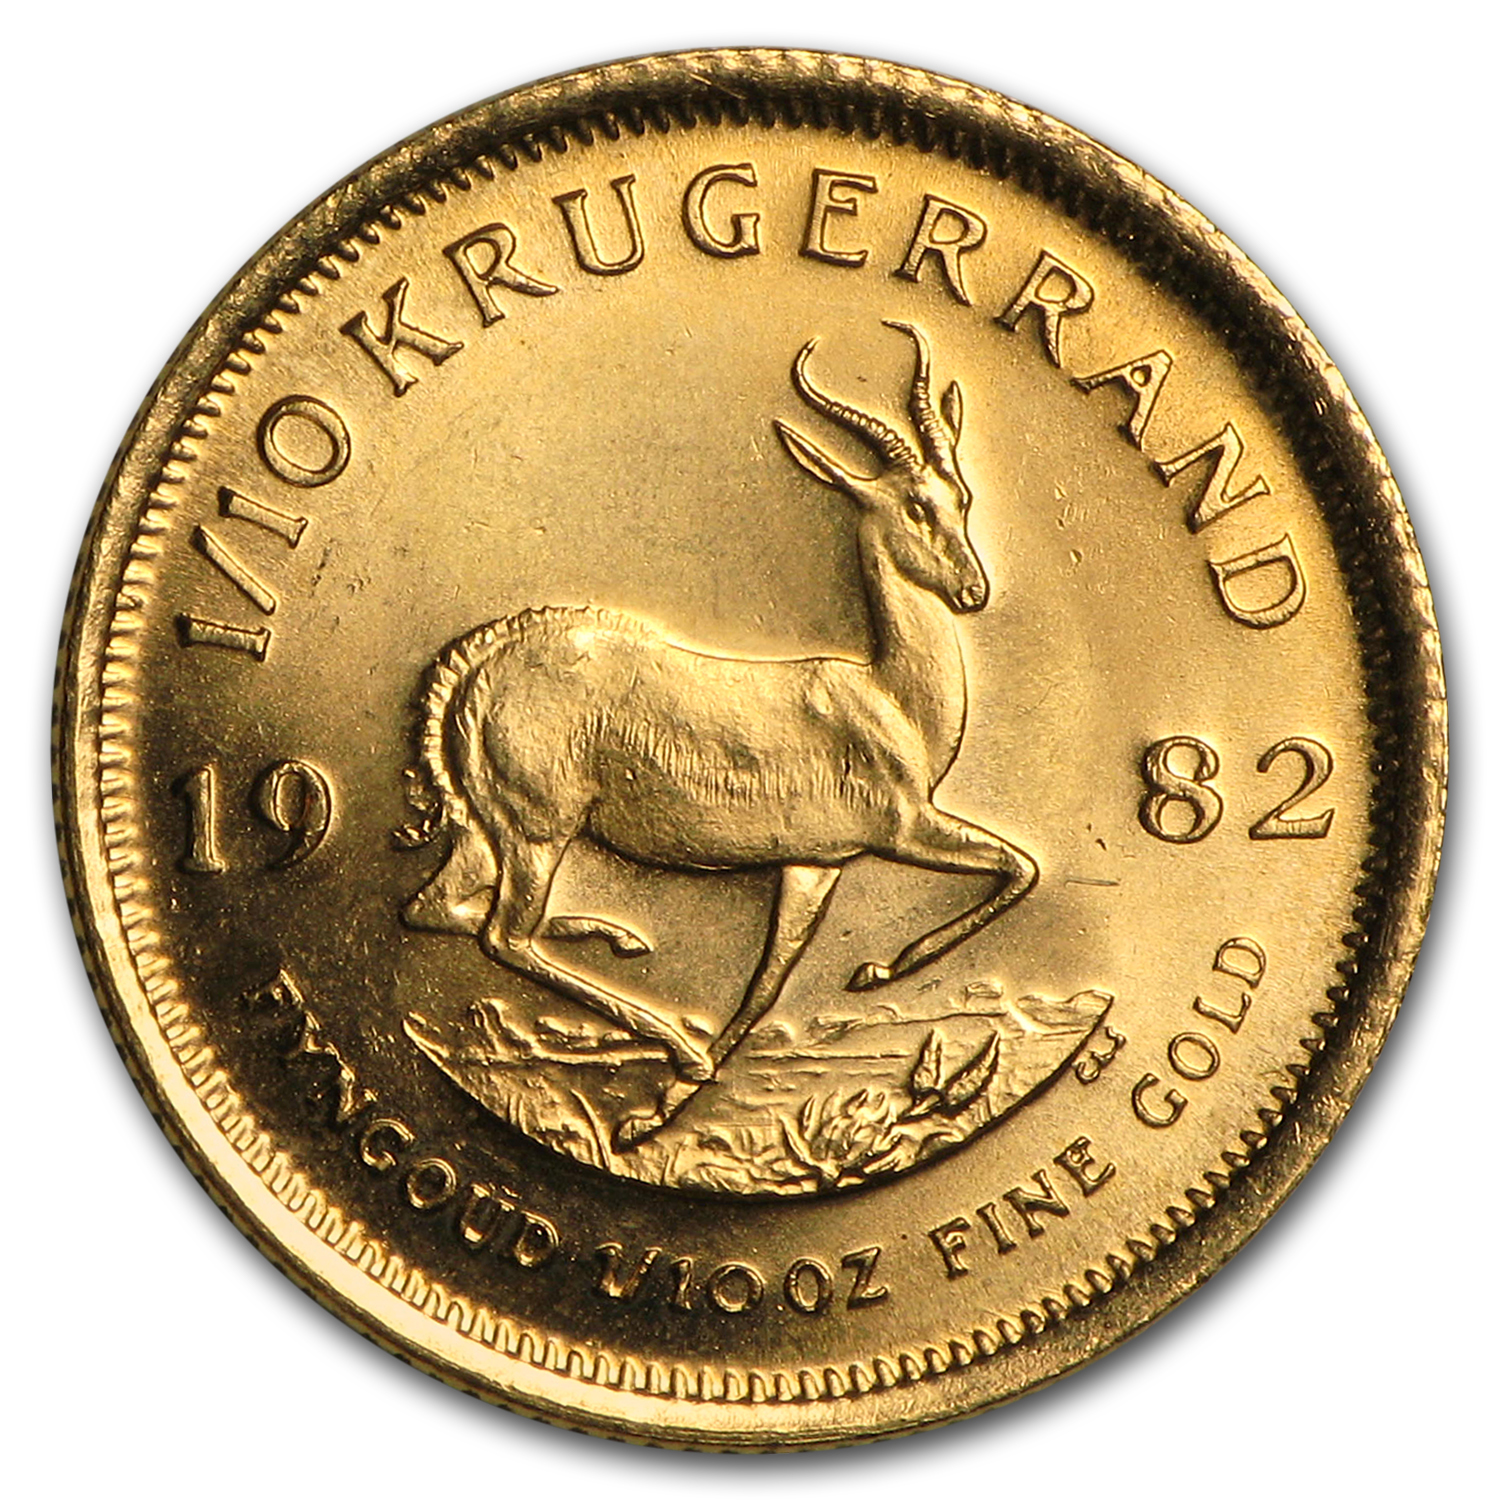 Buy 1982 South Africa 1/10 oz Gold Krugerrand BU